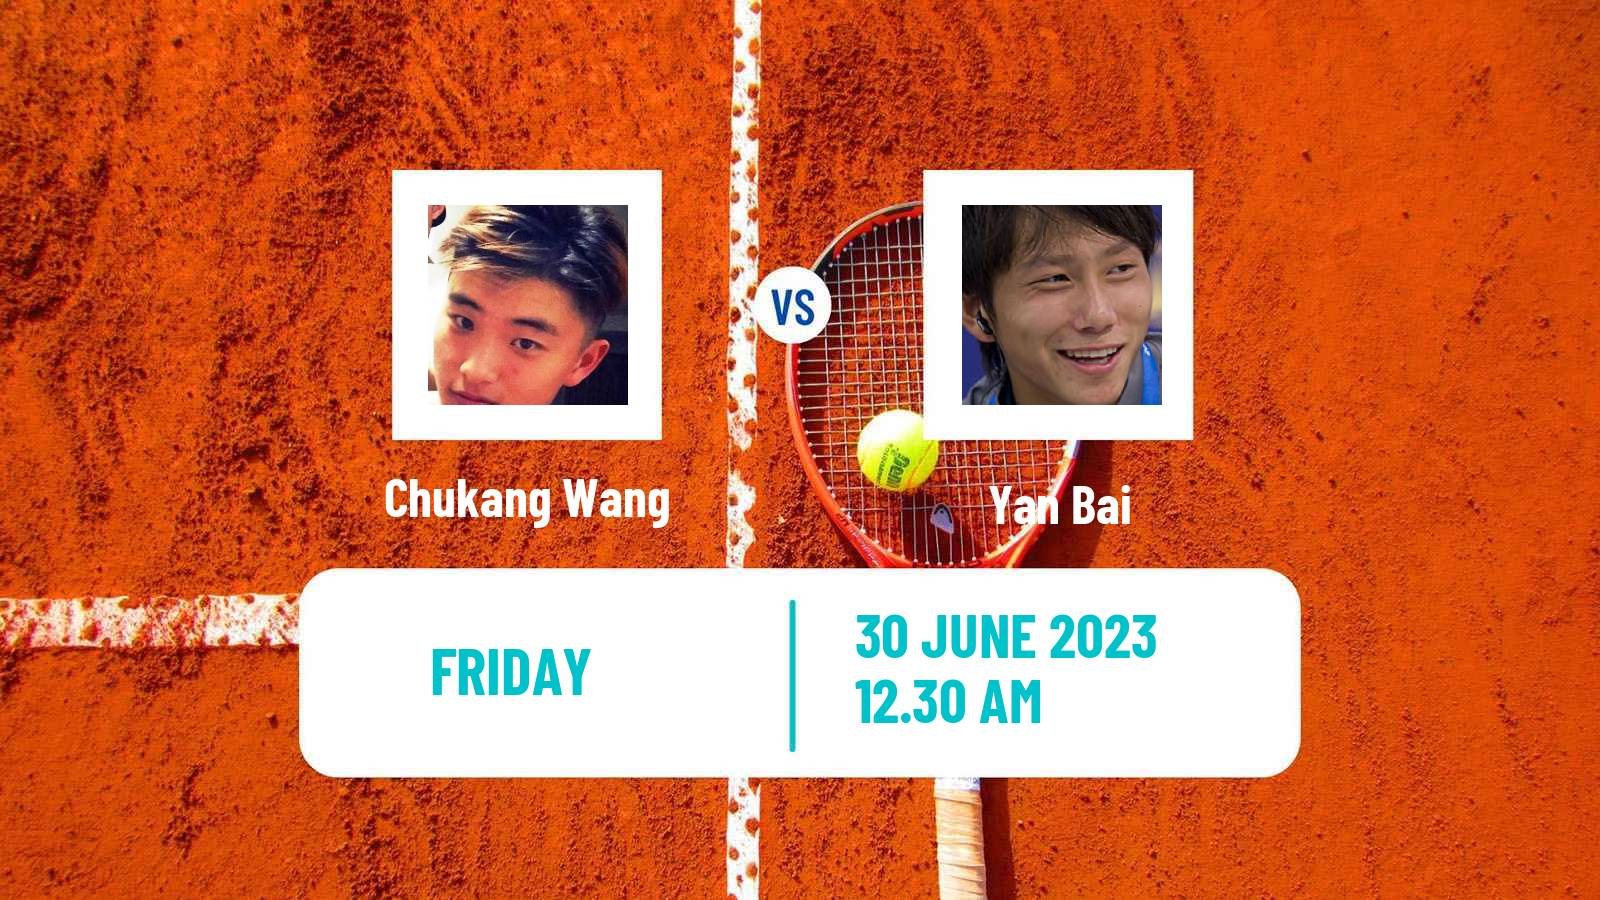 Tennis ITF M15 Tianjin 3 Men Chukang Wang - Yan Bai